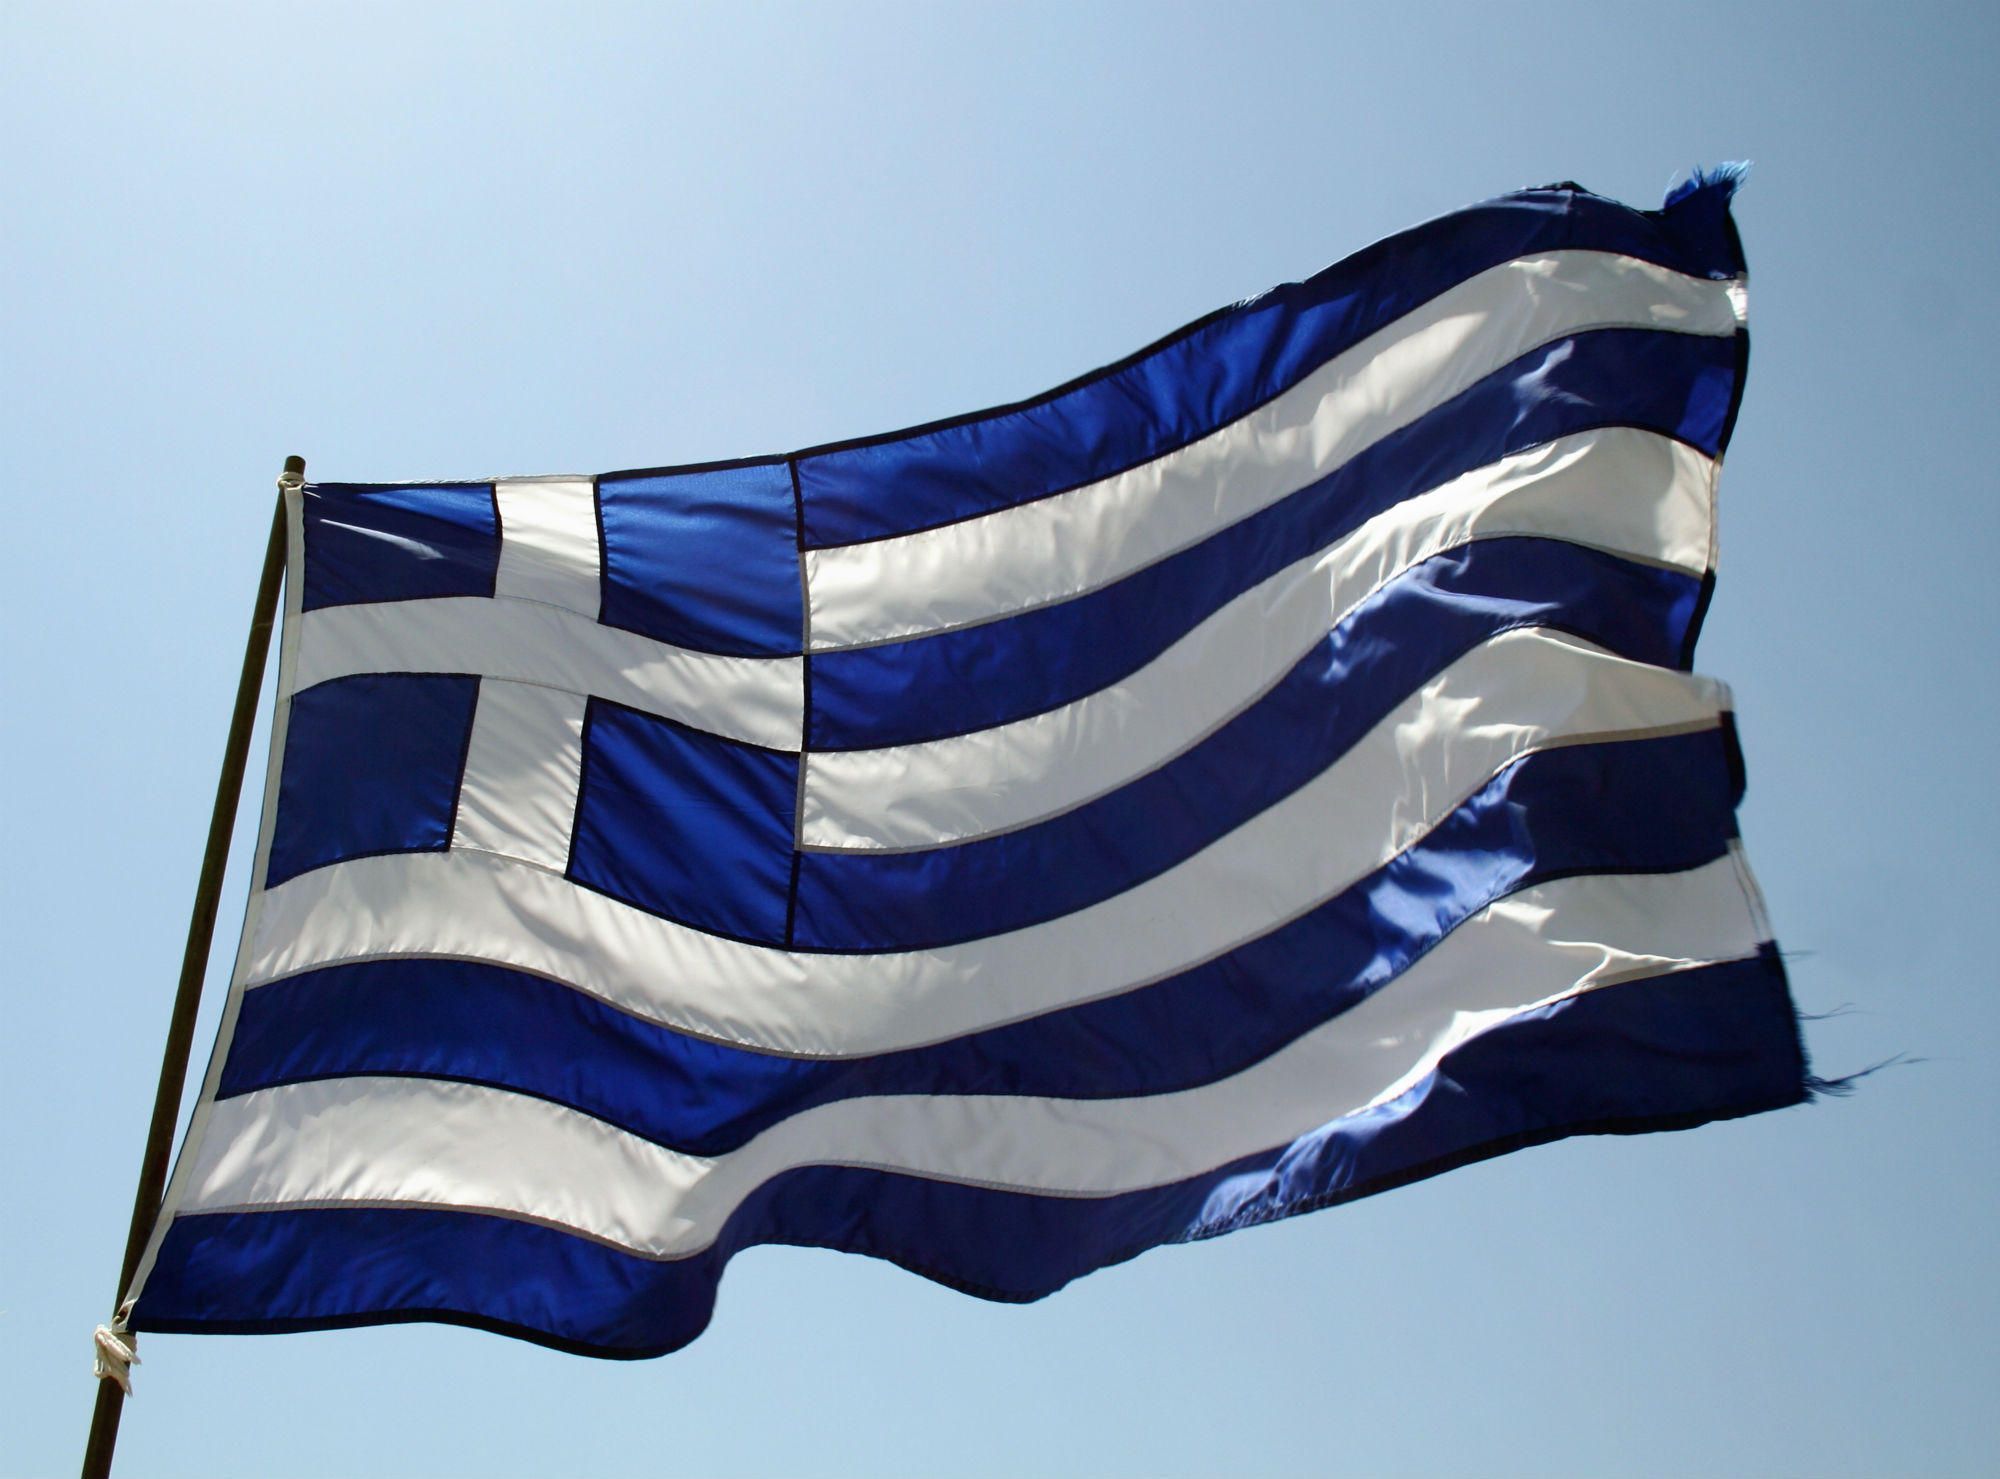 Κοζάνη: Διαμαρτυρία με μια ματωμένη ελληνική σημαία πραγματοποίησαν οι κάτοικοι (βίντεο)